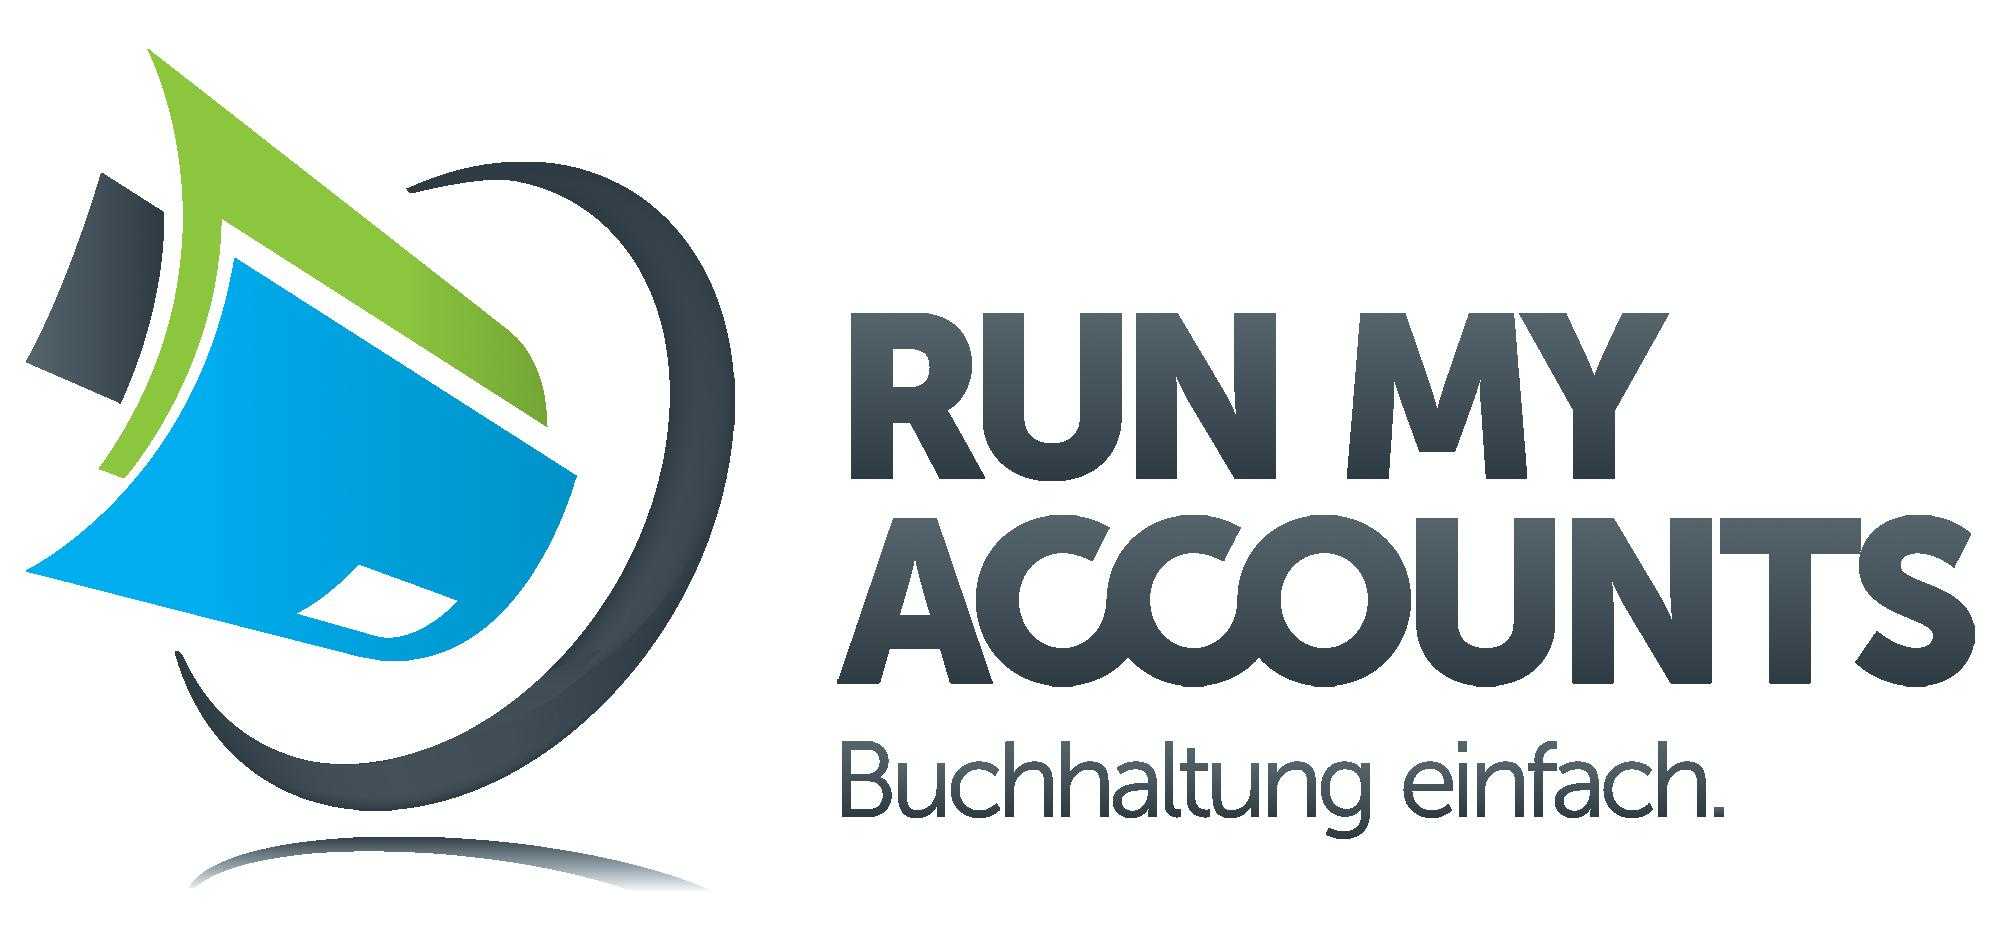 Run my Accounts bringt kostenlose Buchhaltungssoftware